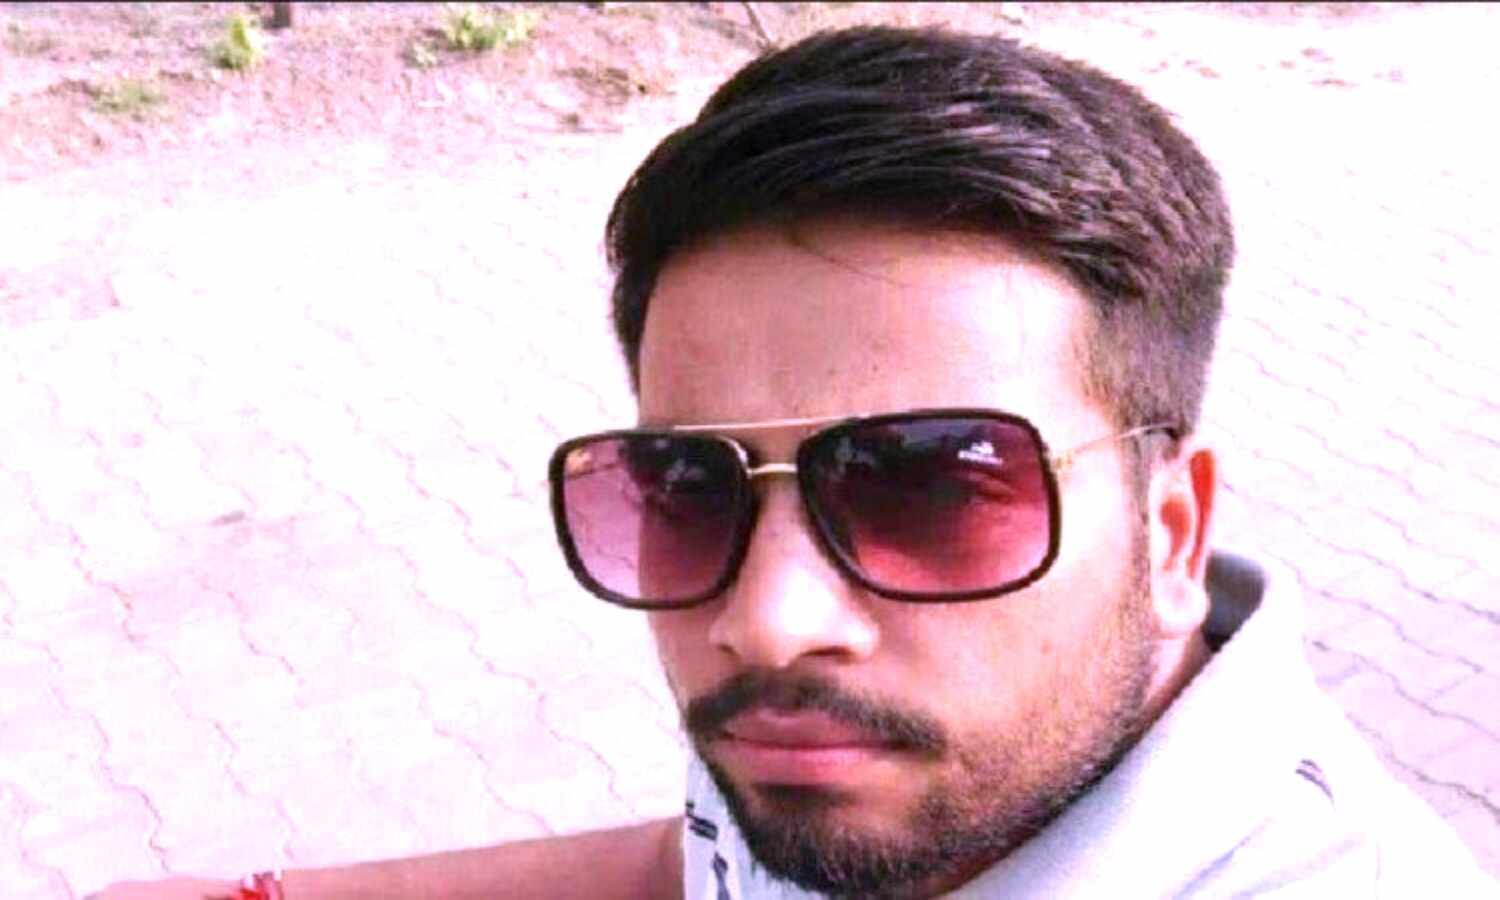 Punjab News : पंजाबी यूनिवर्सिटी का कर्मचारी कैंपस में मिला मृत, पुलिस ने किया आत्महत्या का दावा